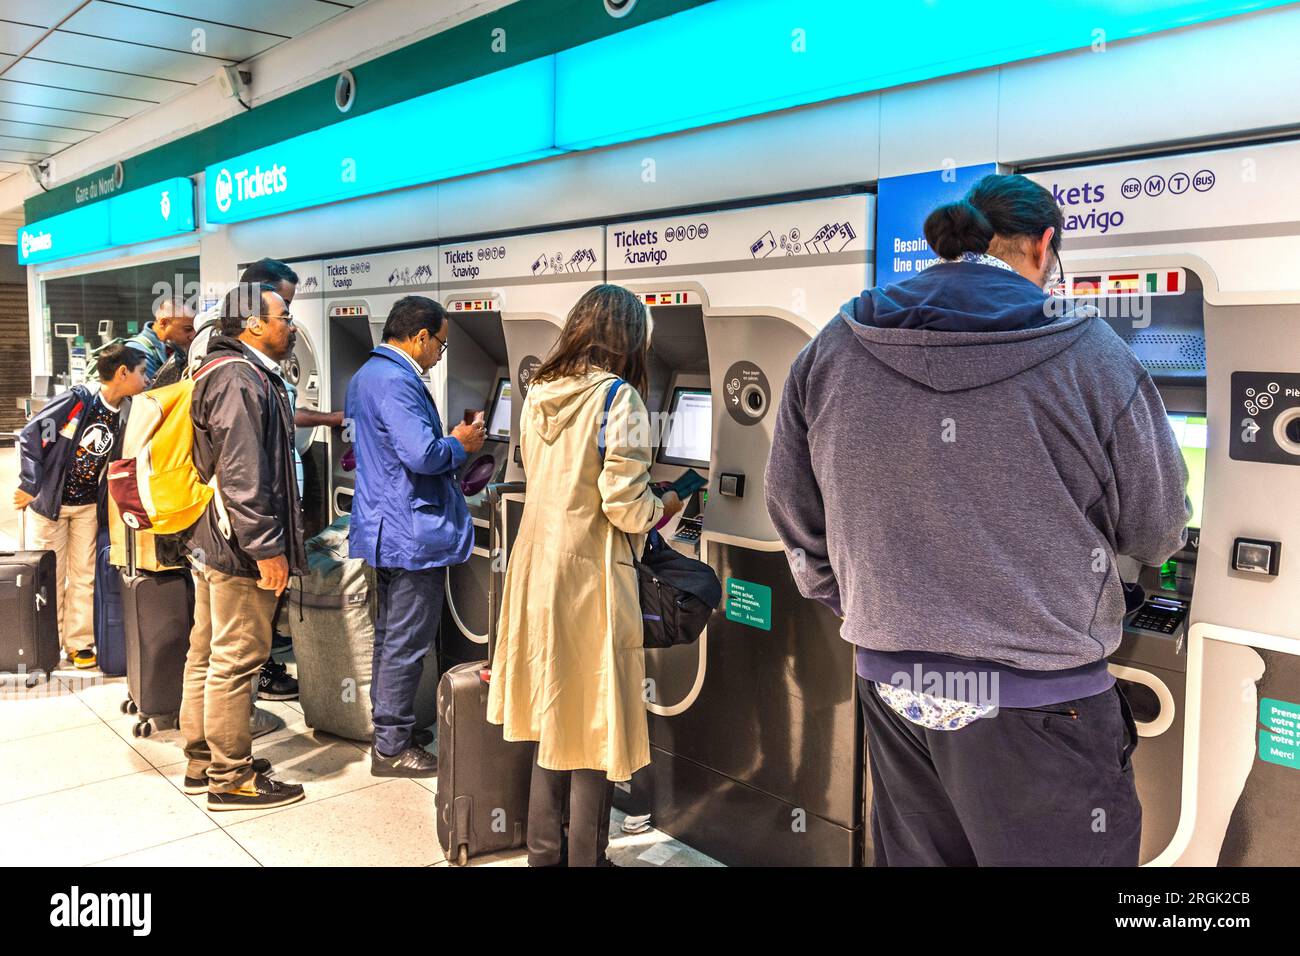 Les passagers achètent des billets auprès des distributeurs automatiques pour le métro de Paris - Paris, France. Banque D'Images